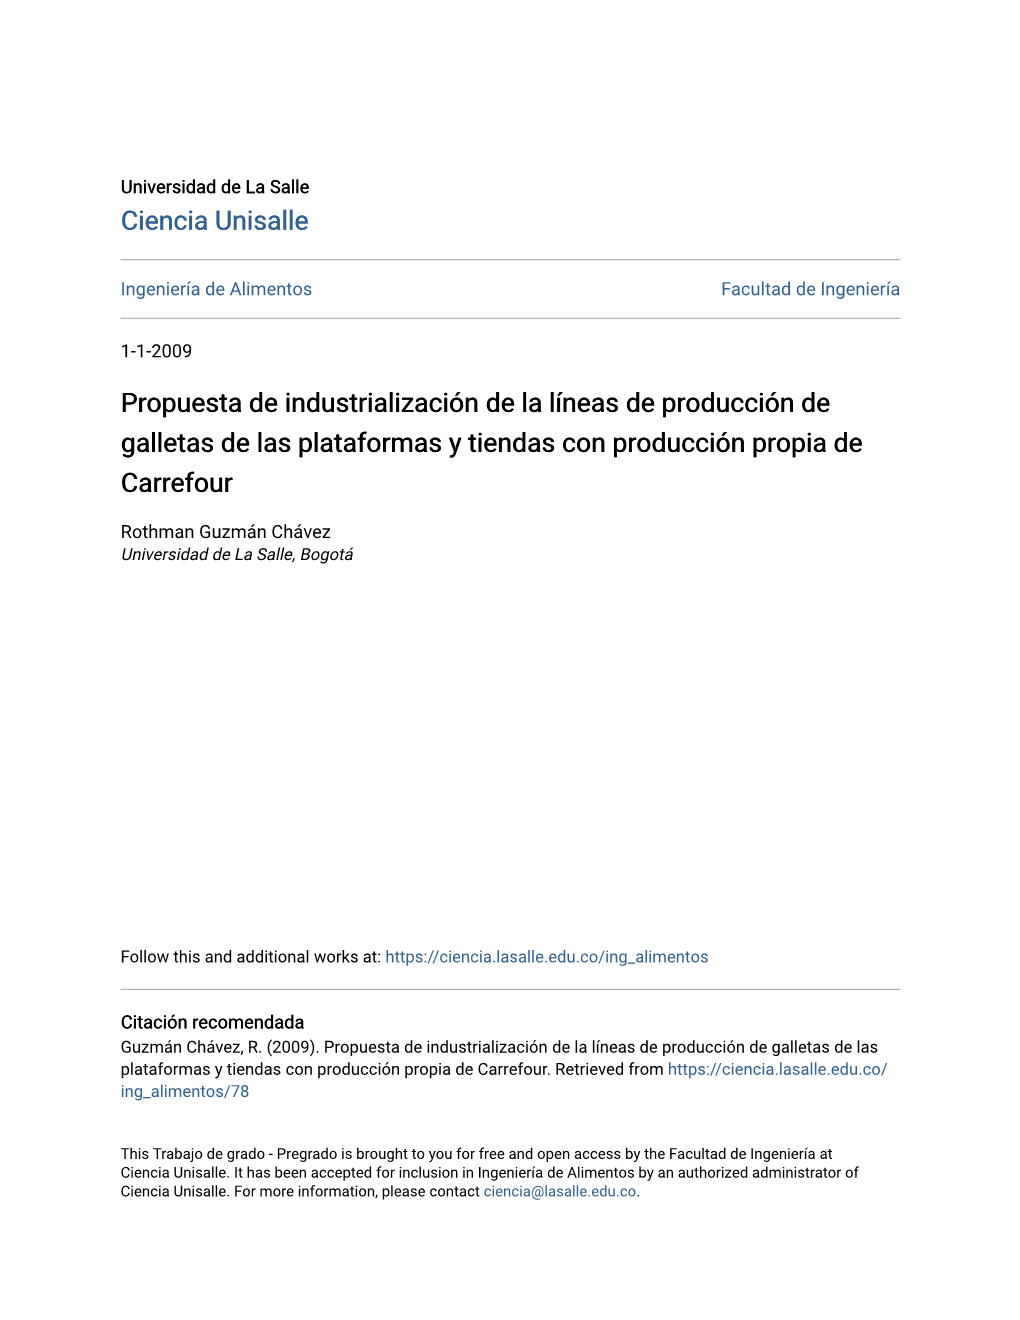 Propuesta De Industrialización De La Líneas De Producción De Galletas De Las Plataformas Y Tiendas Con Producción Propia De Carrefour